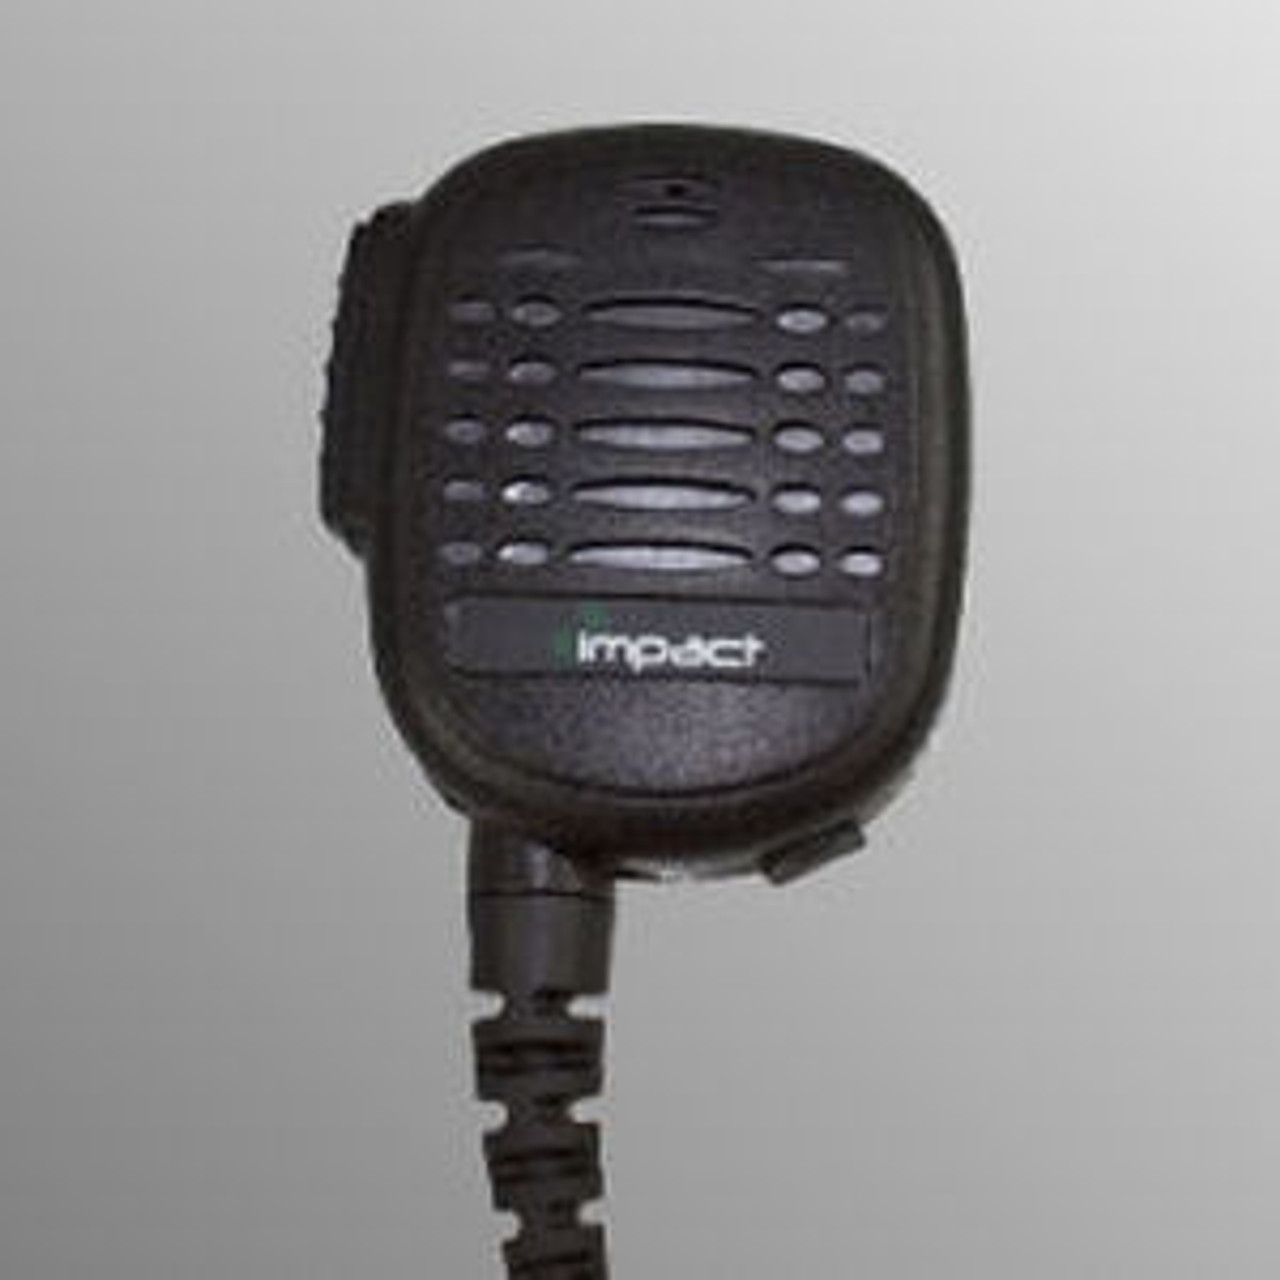 Harris P5350 Noise Canceling Speaker Mic.